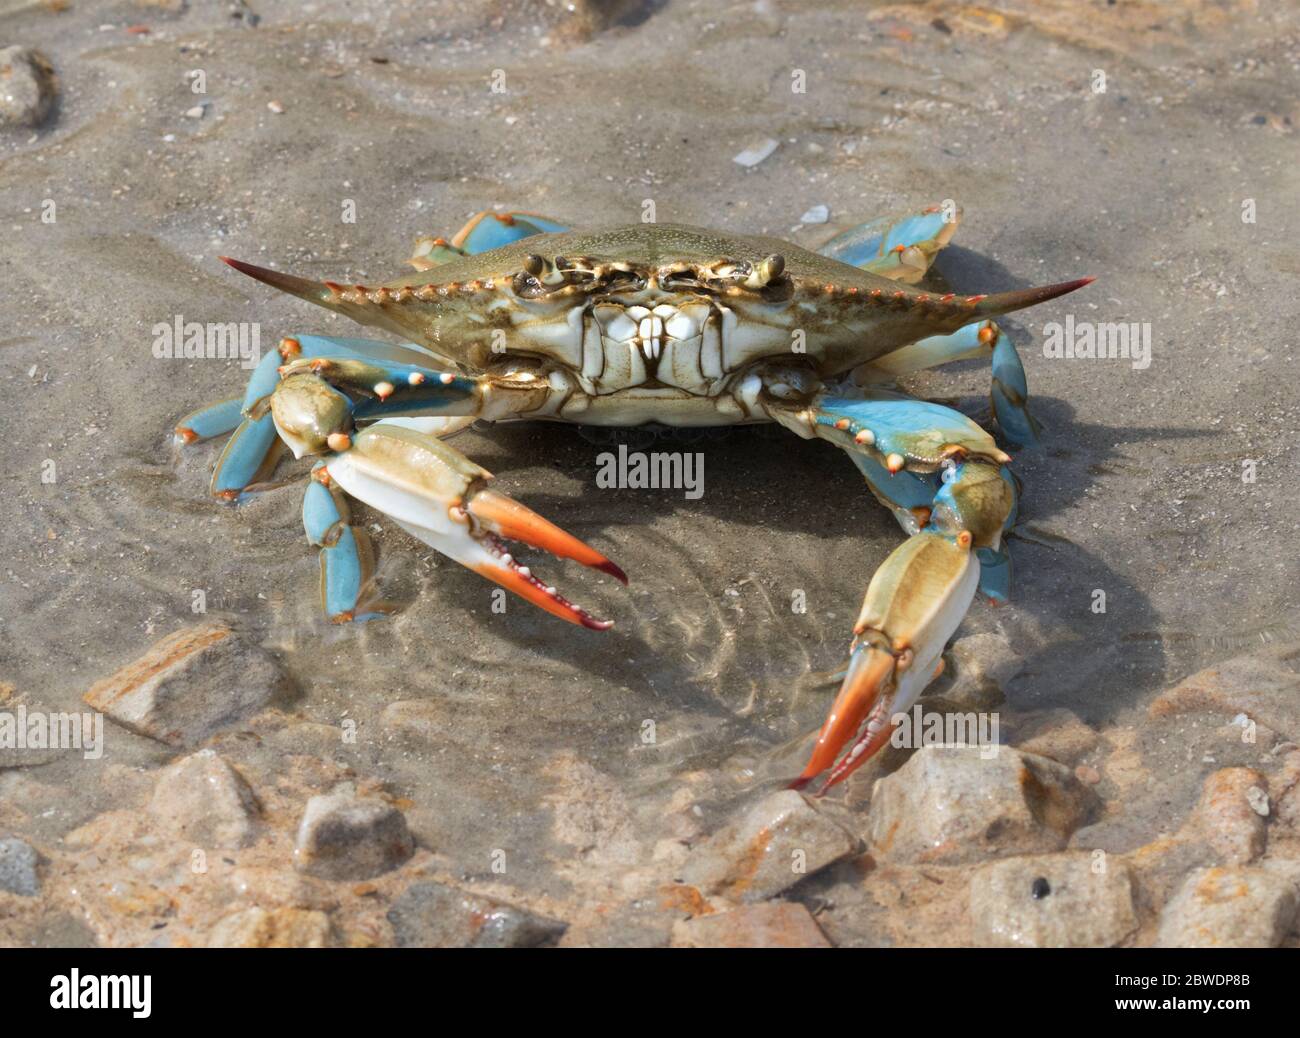 Blue crab (Callinectes sapidus) close up, Texas, Galveston Stock Photo